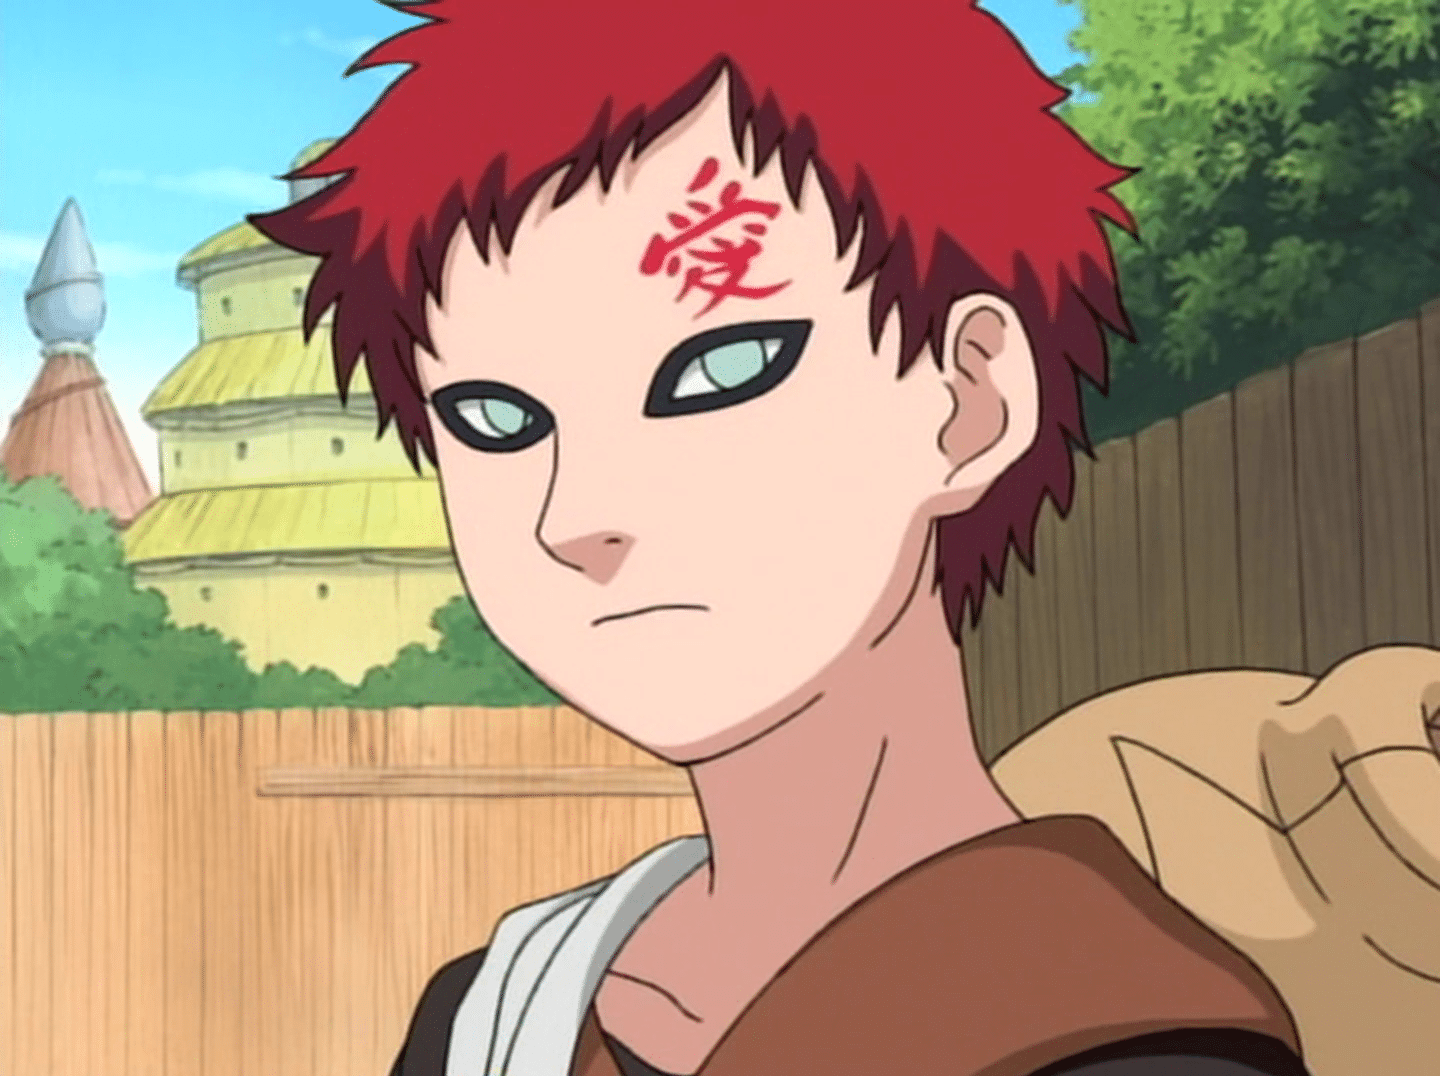 Naruto - Entenda o significado do símbolo na testa do Gaara  Fond d'ecran  dessin, Personnages naruto, Boruto personnages